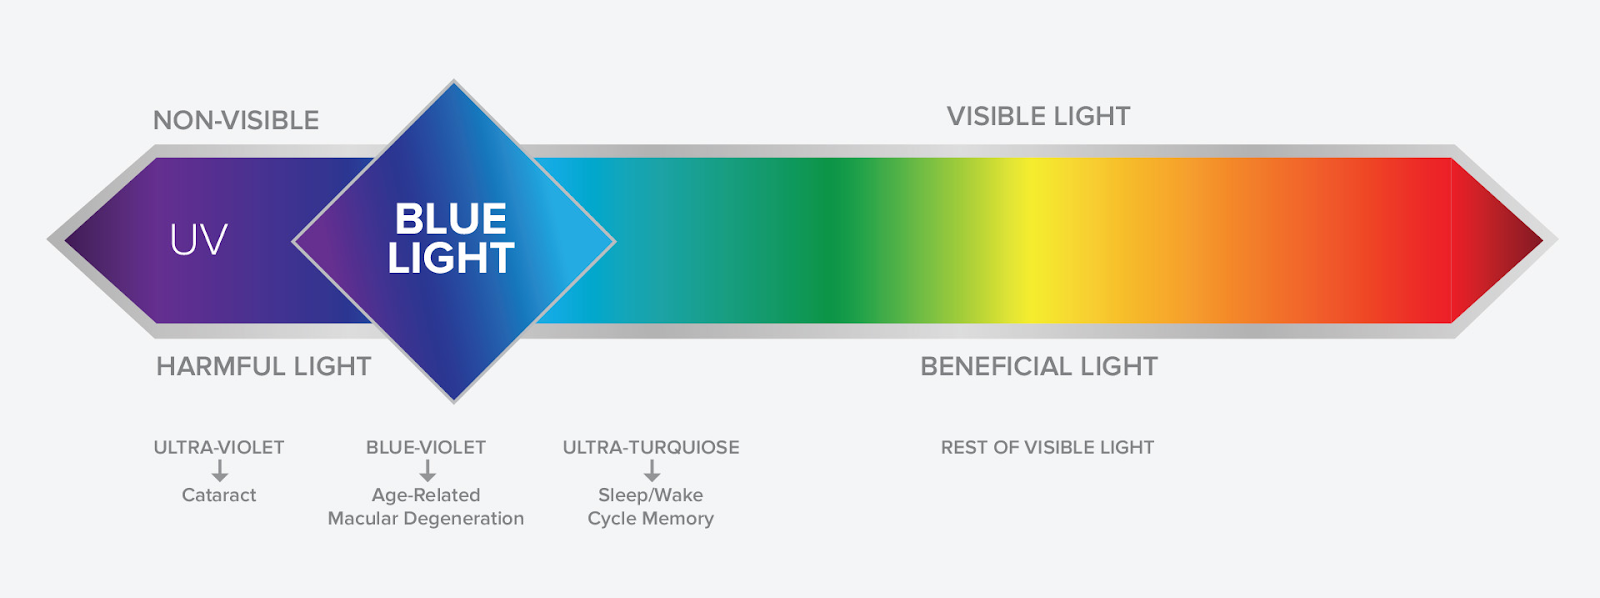 Blue light wavelength on the light spectrum.